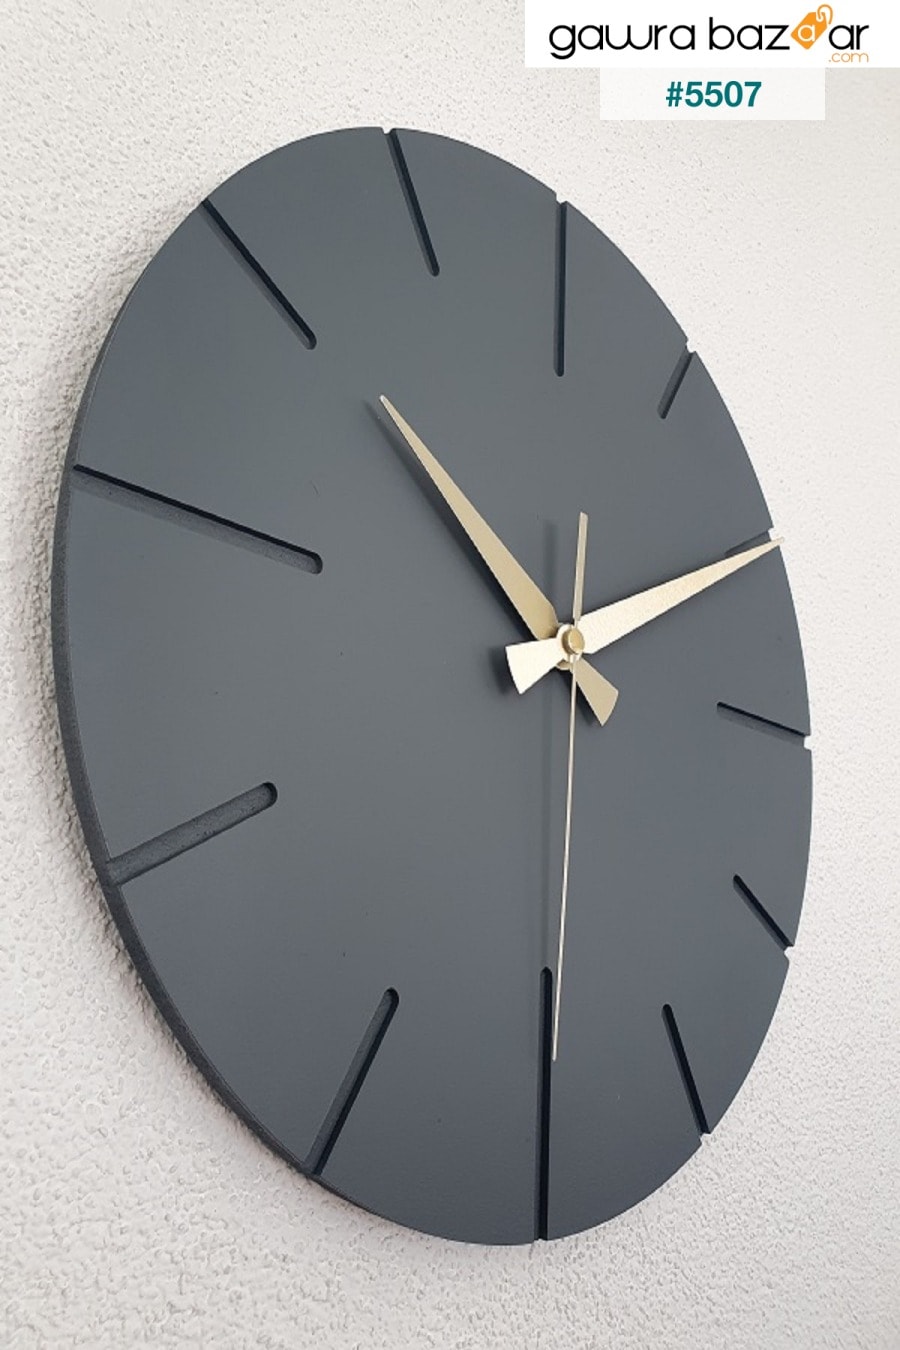 ساعة حائط خشبية مصنوعة يدويًا بتصميم خاص مزخرف 34 X 34 سم كتابات بسيطة باللون الرمادي BAN MOD 0